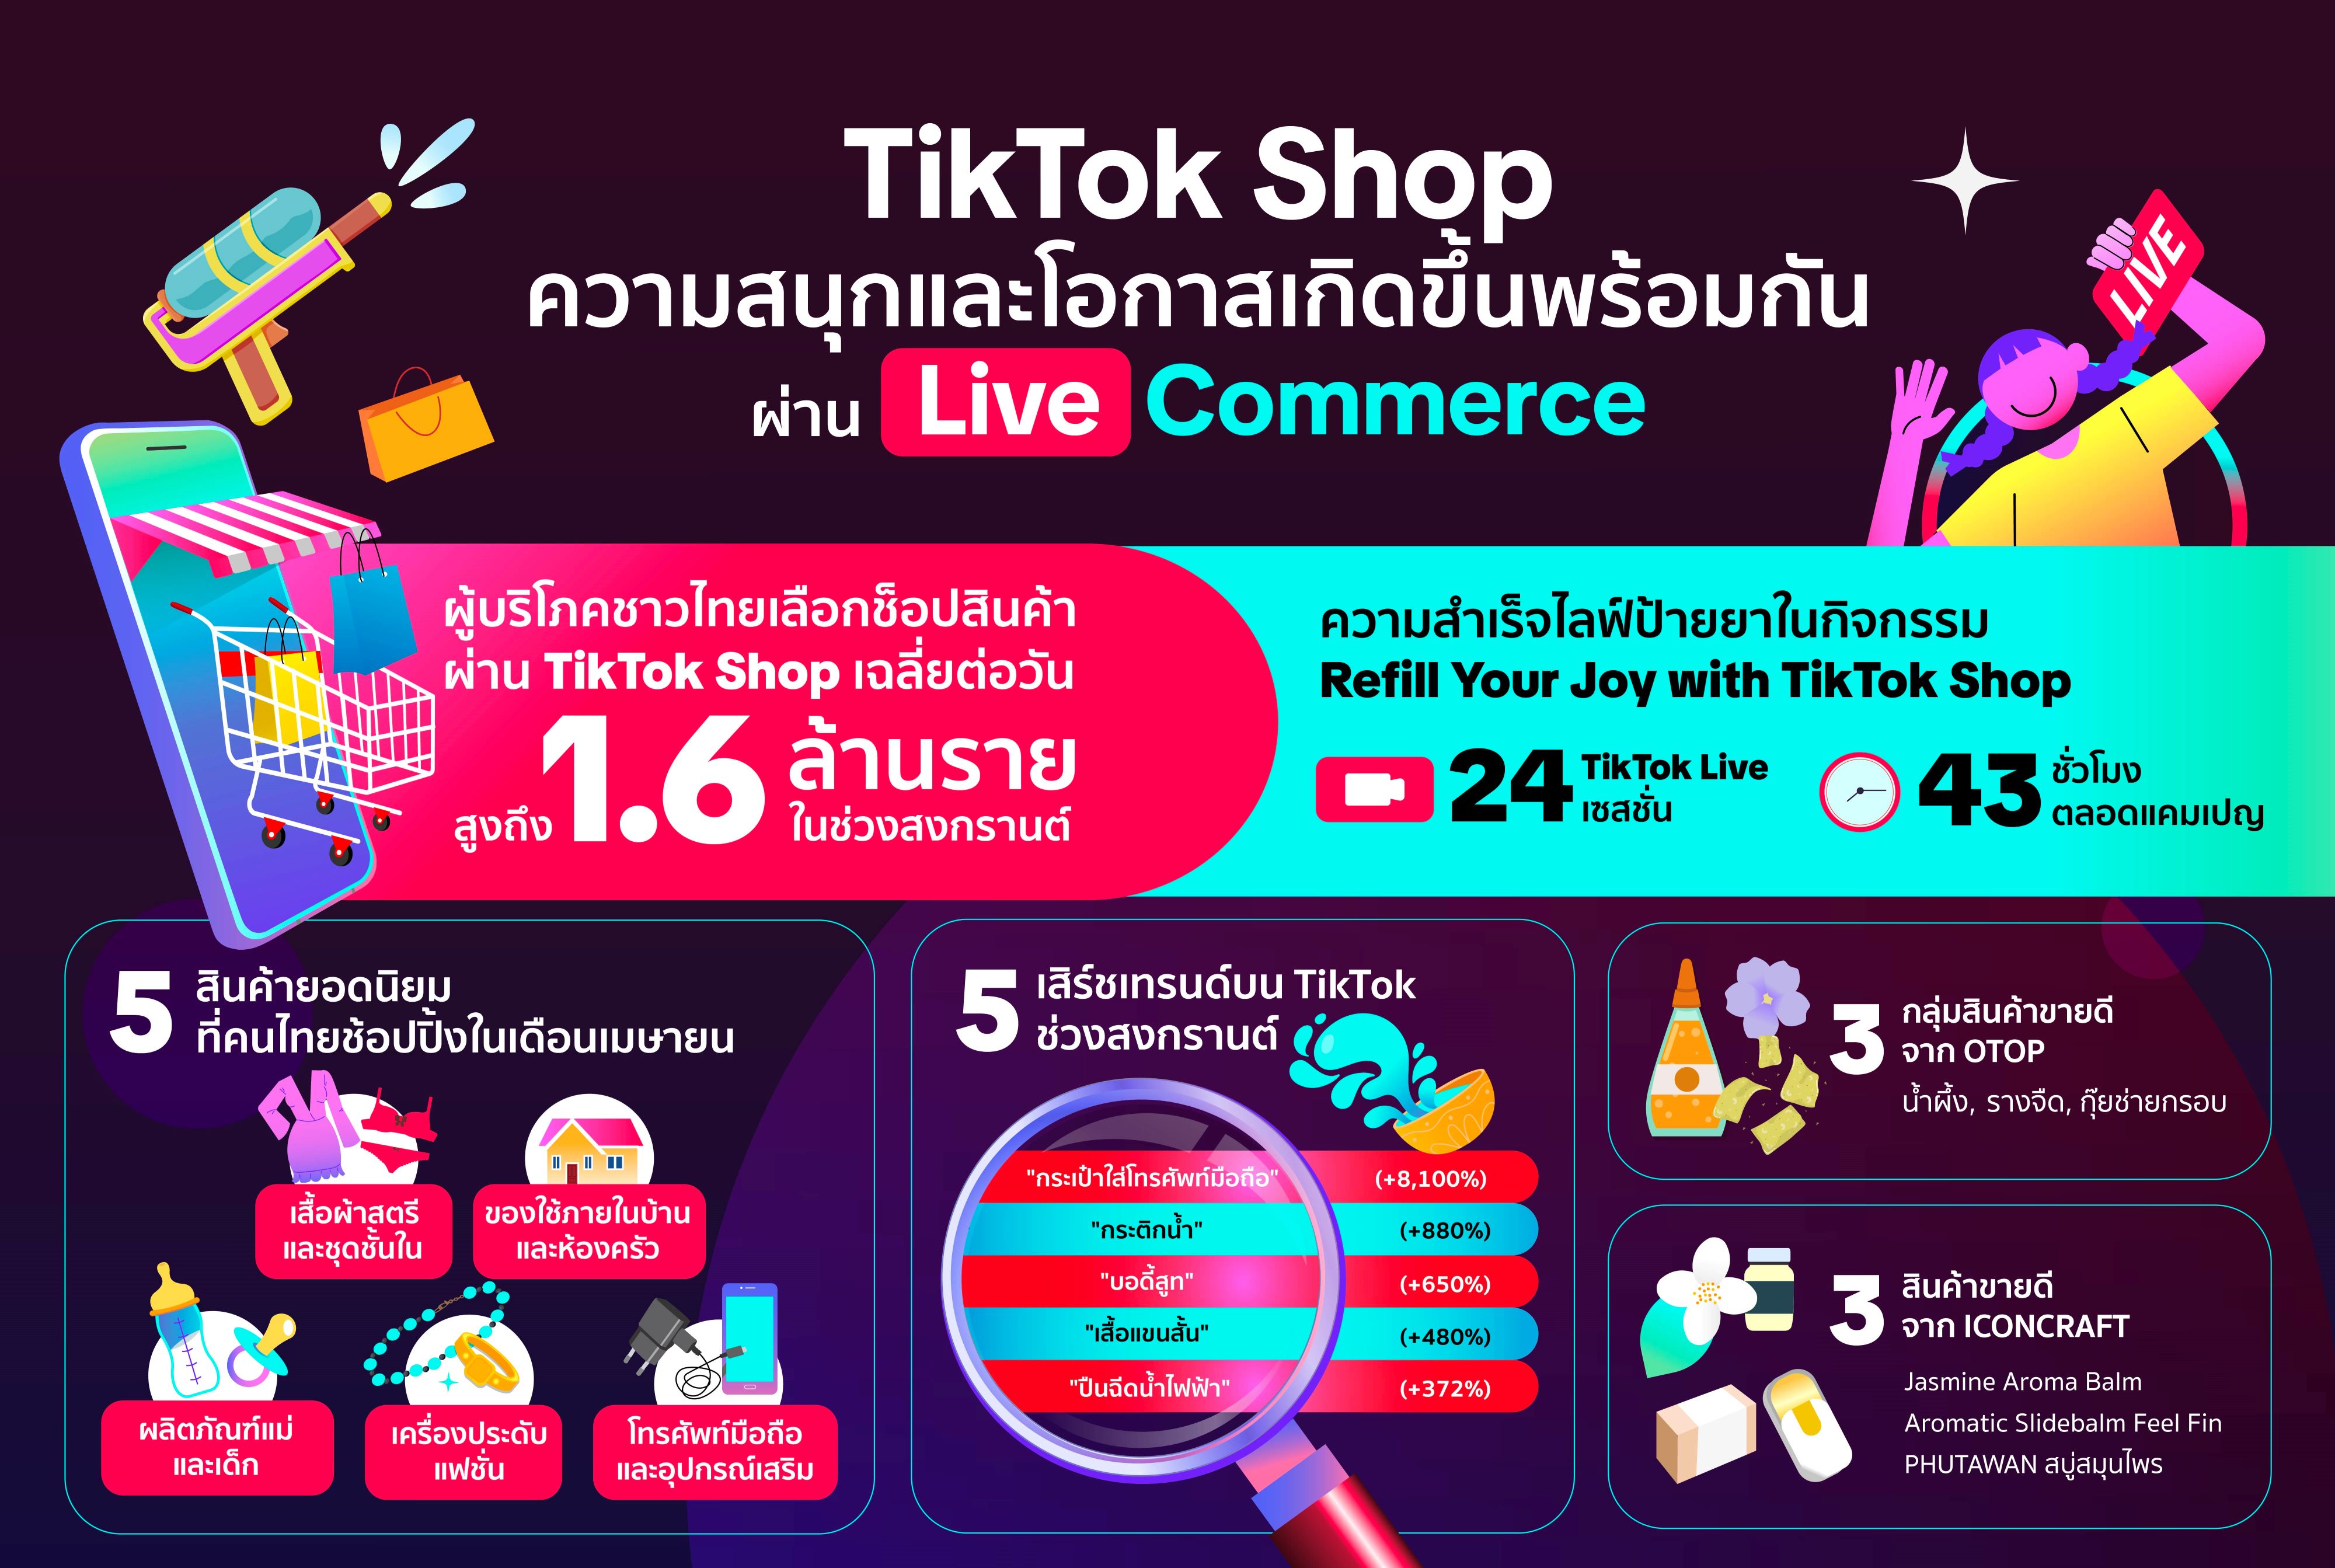 TikTok Shop ชี้โอกาสใหม่ ๆ สำหรับธุรกิจและทุกจังหวะชีวิตเกิดขึ้นพร้อมกันได้ผ่าน Live Commerce